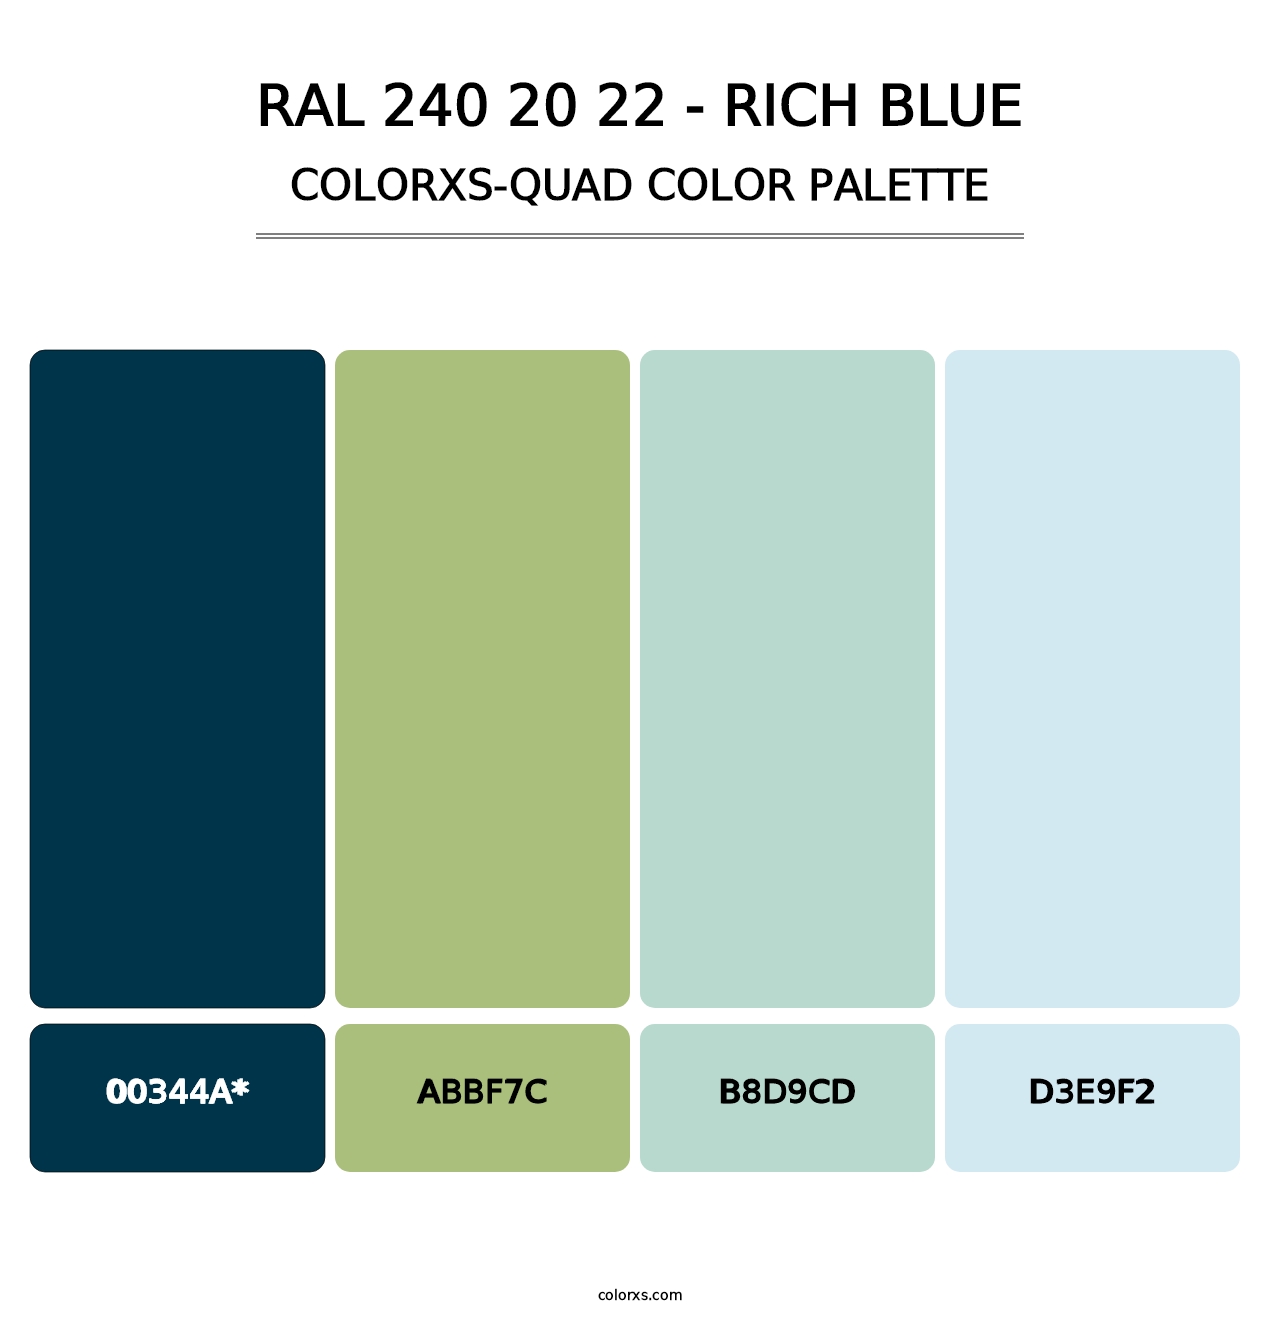 RAL 240 20 22 - Rich Blue - Colorxs Quad Palette